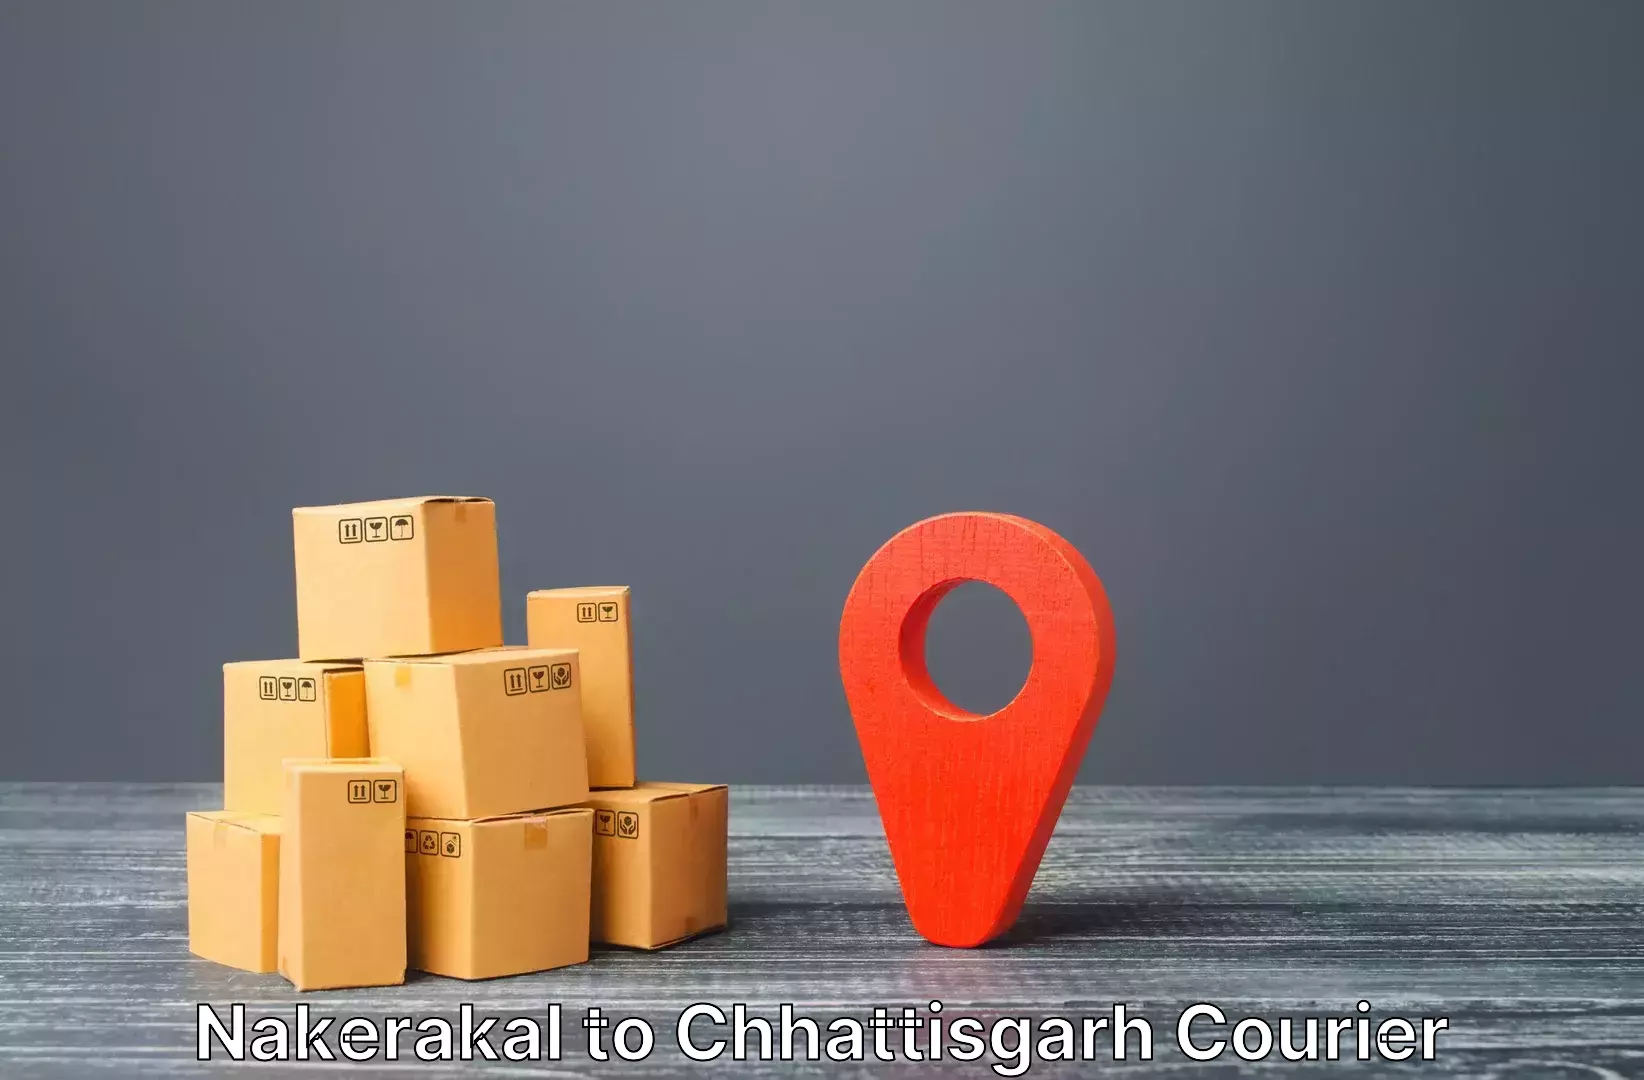 Baggage courier logistics Nakerakal to Janjgir Champa